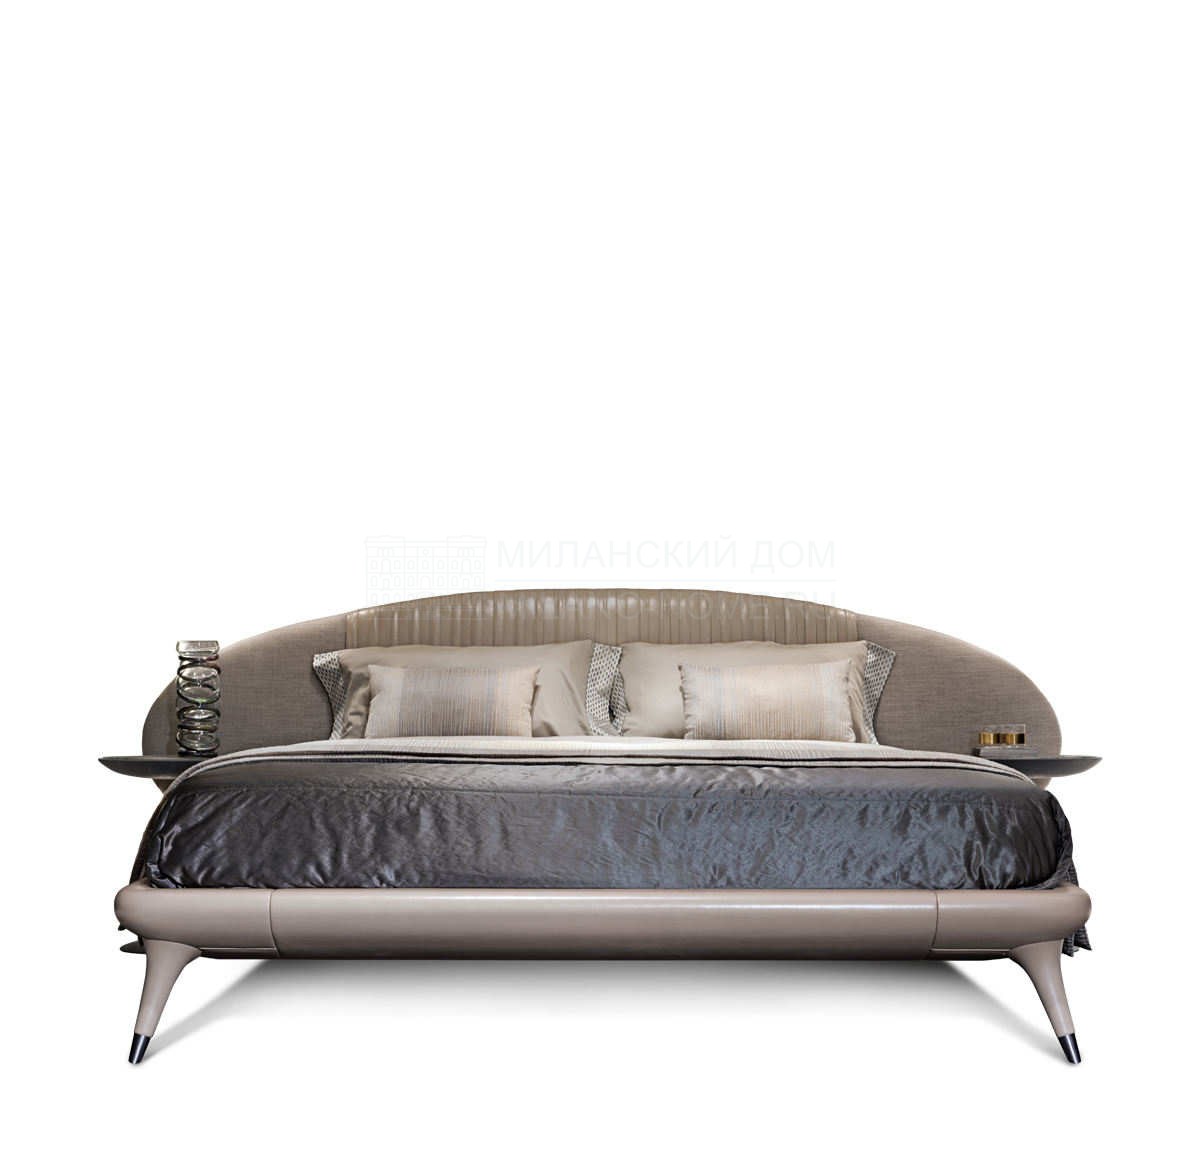 Кожаная кровать Princess bed из Италии фабрики IPE CAVALLI VISIONNAIRE